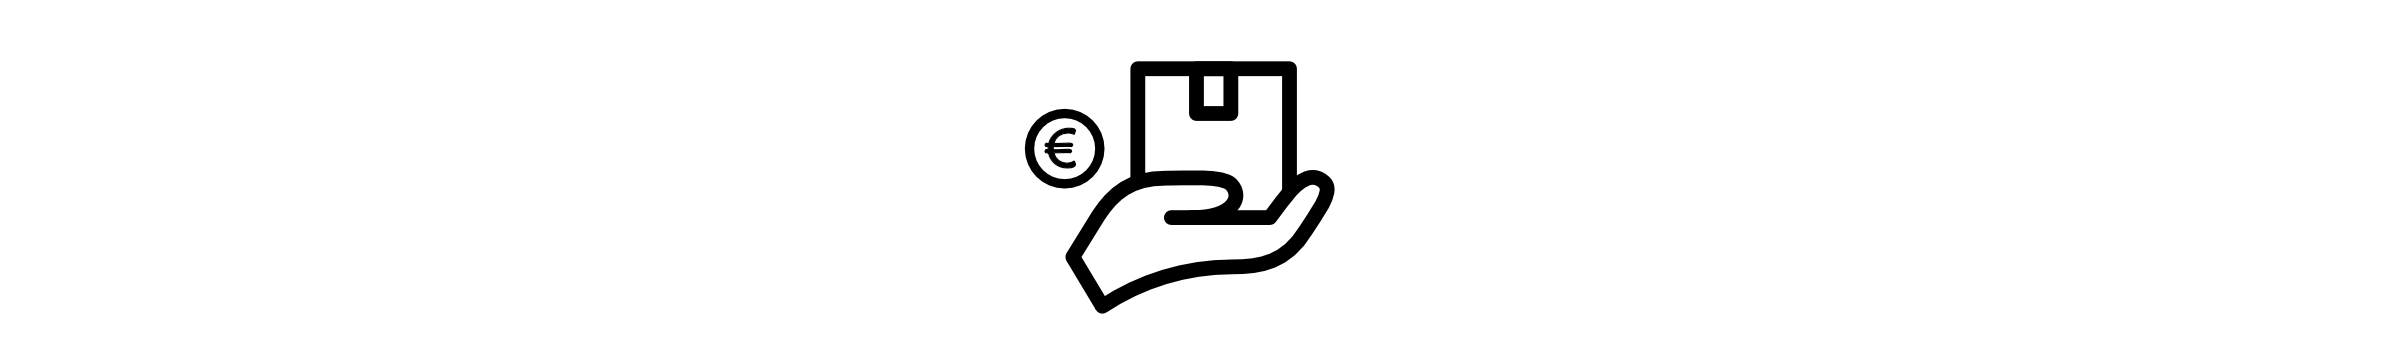 info-banner-versand und bezahlungbedingungen-symbol